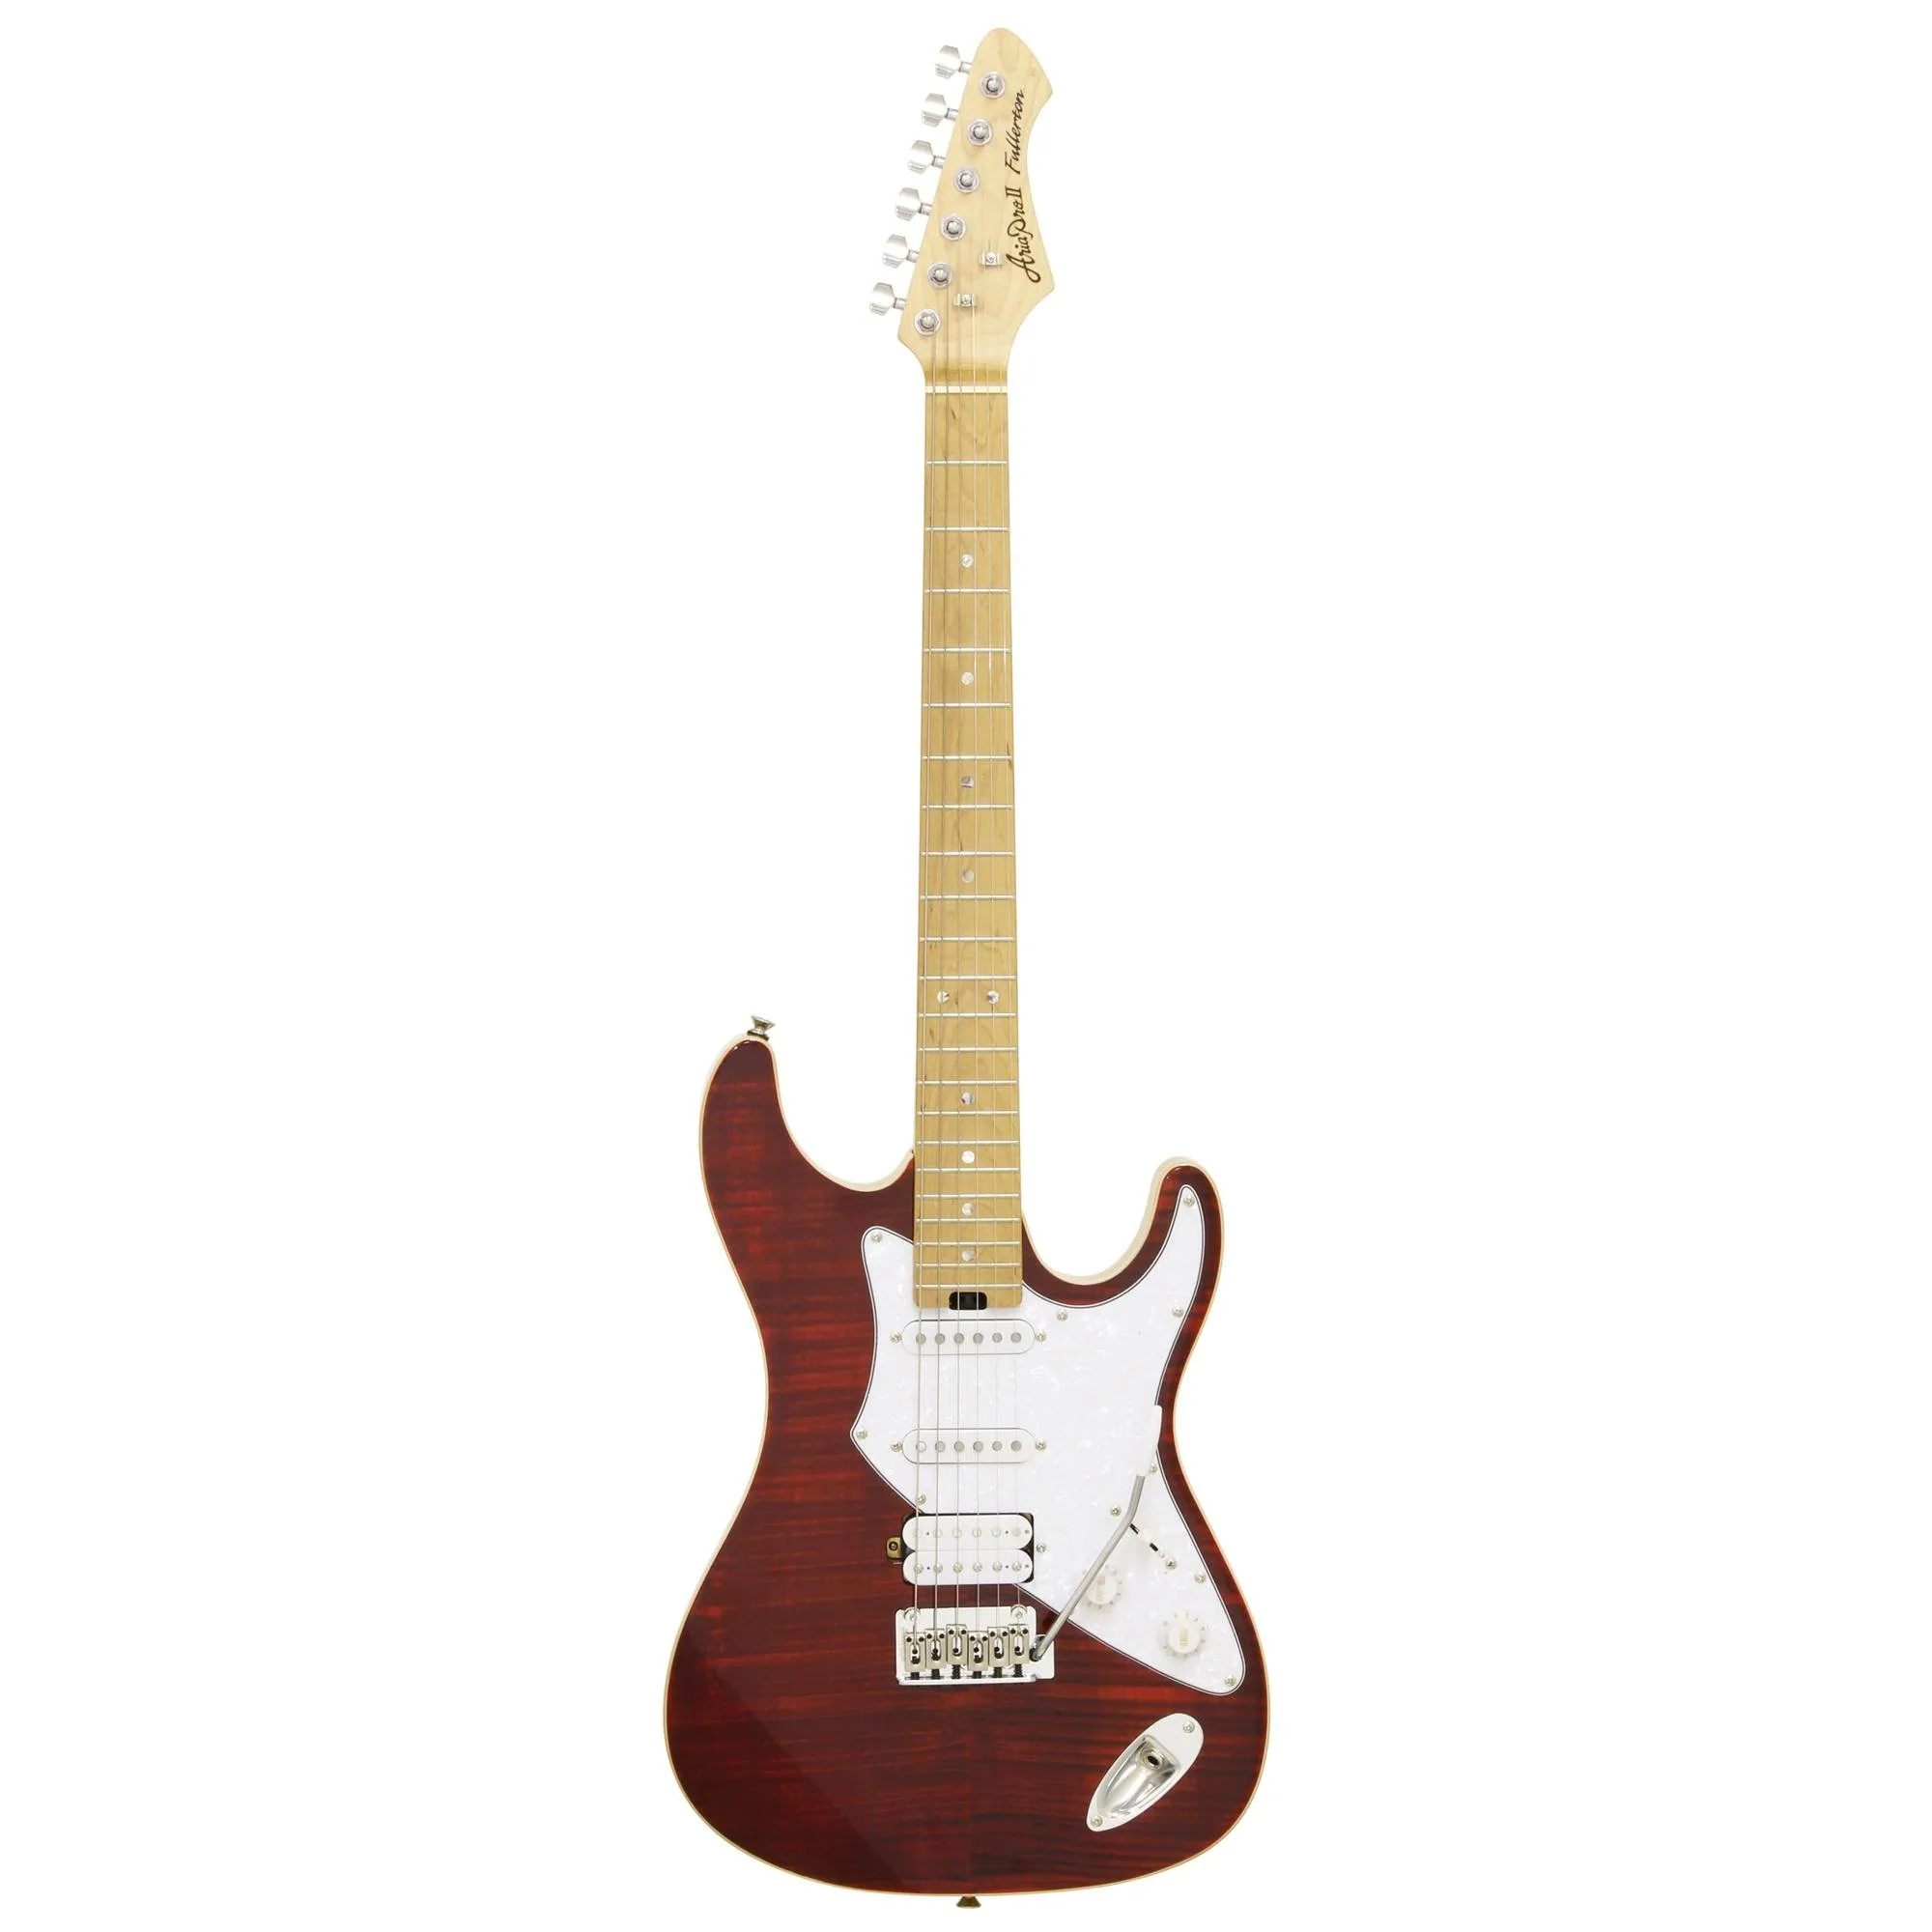 Guitarra Aria Pro II 714-MK2 Fullerton Ruby Red por 2.904,00 à vista no boleto/pix ou parcele em até 12x sem juros. Compre na loja Mundomax!